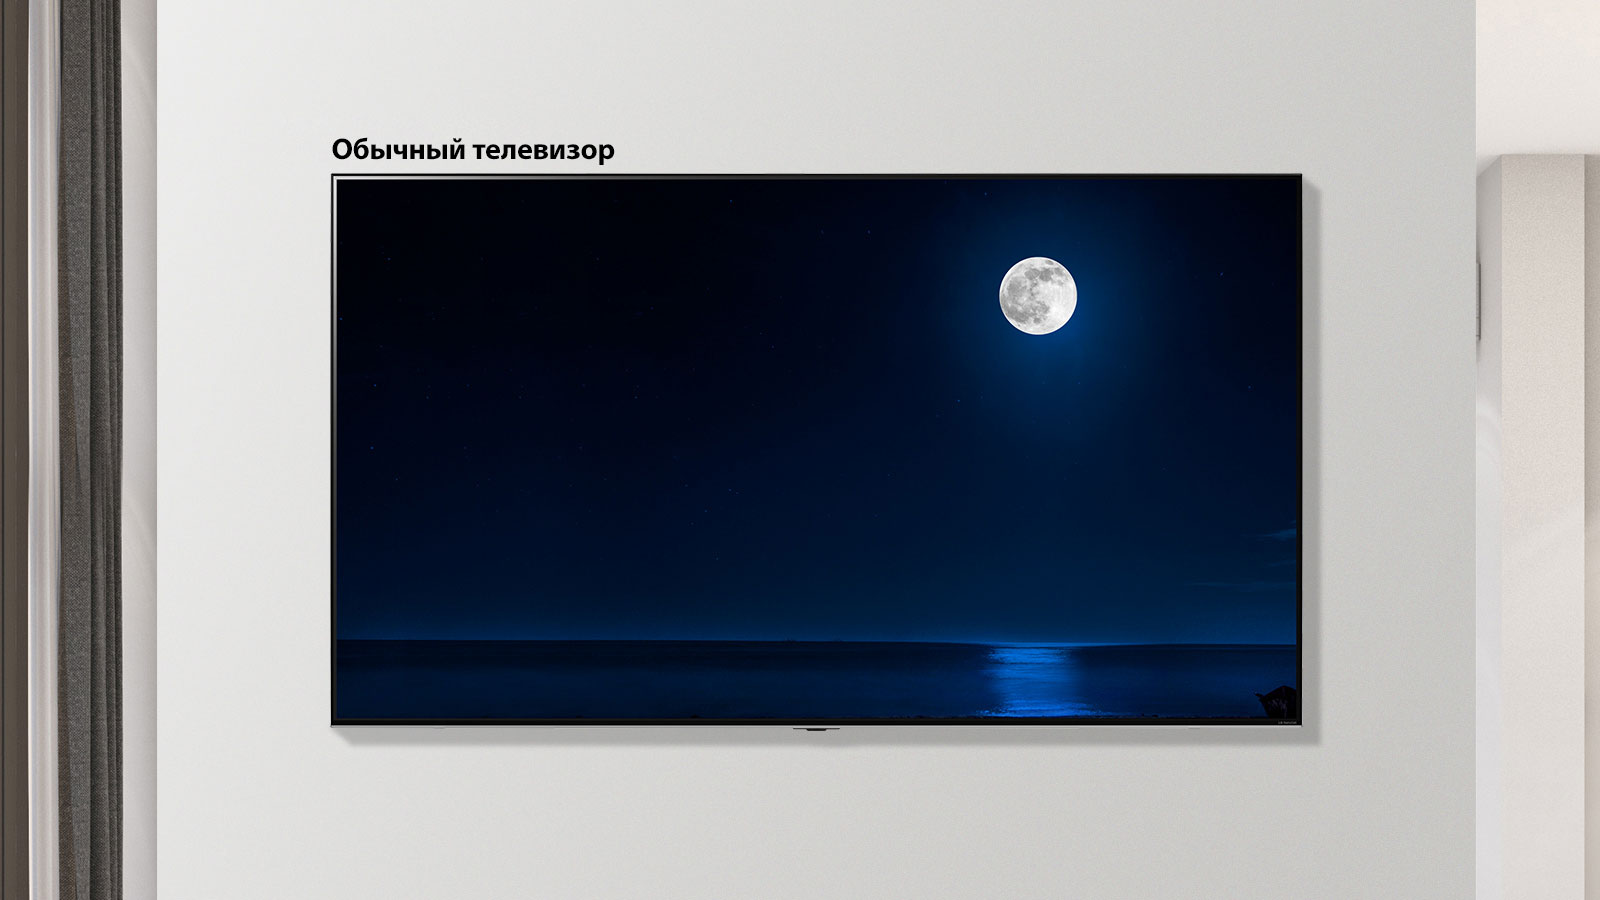 Прокручиваемое изображение установленного на стене телевизора, демонстрирующее темную сцену полной луны, отражающейся в воде. На экране чередуются изображения телевизора обычного размера и телевизора LG NanoCell с большим экраном.